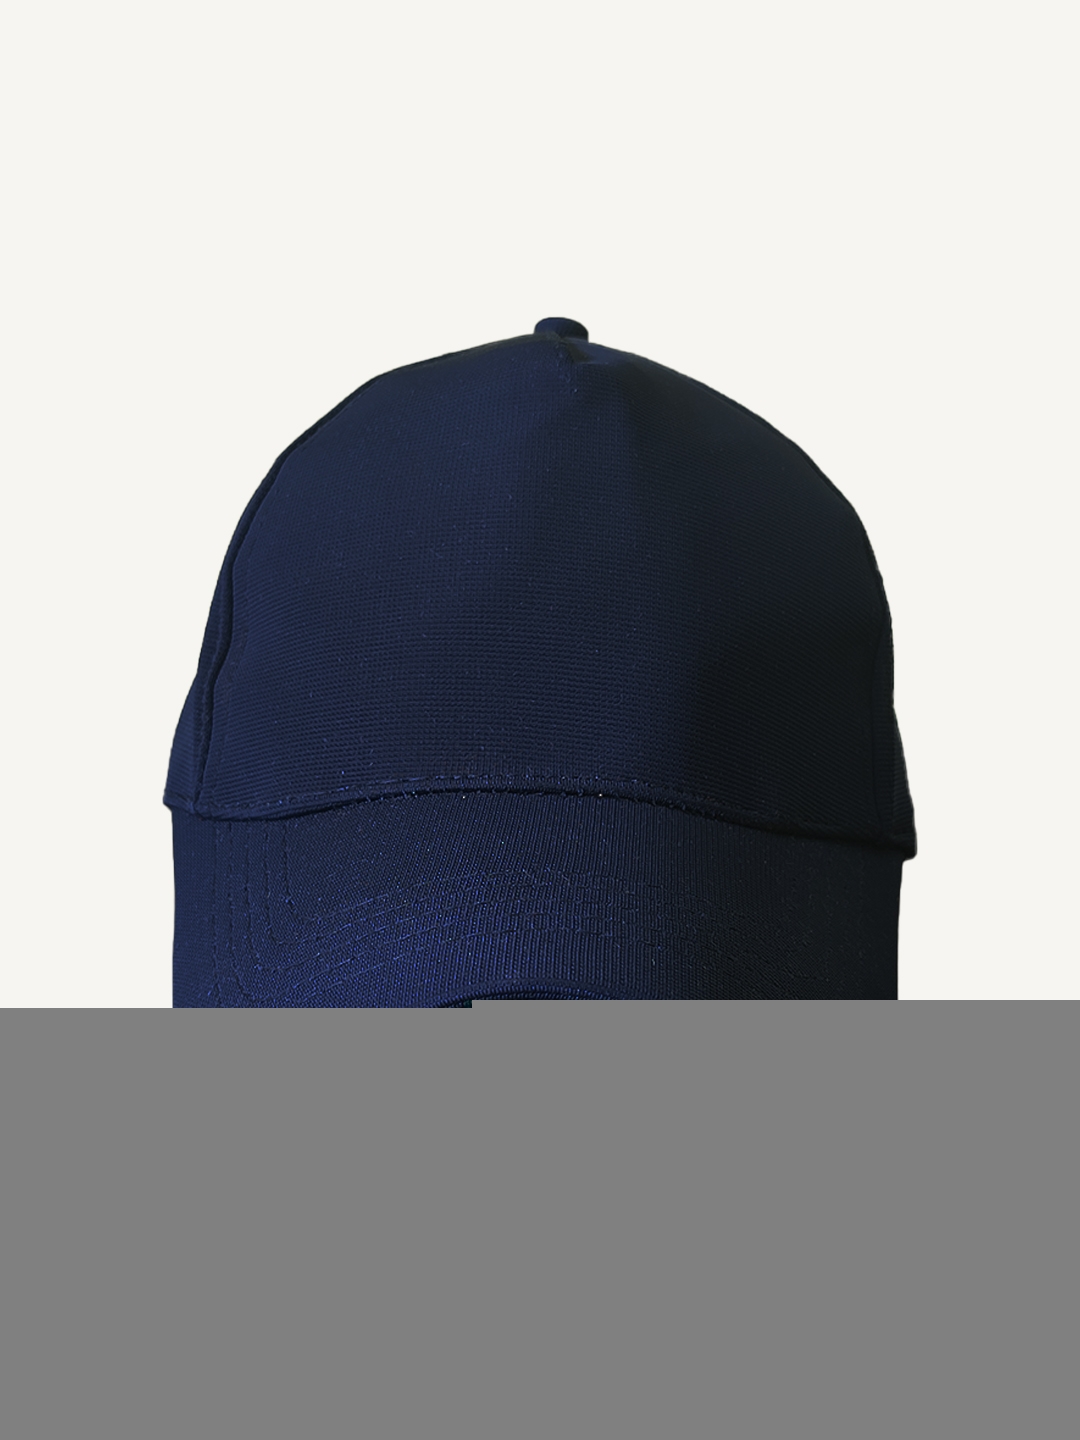 creativeideas.store | Plain Blue Cap 0